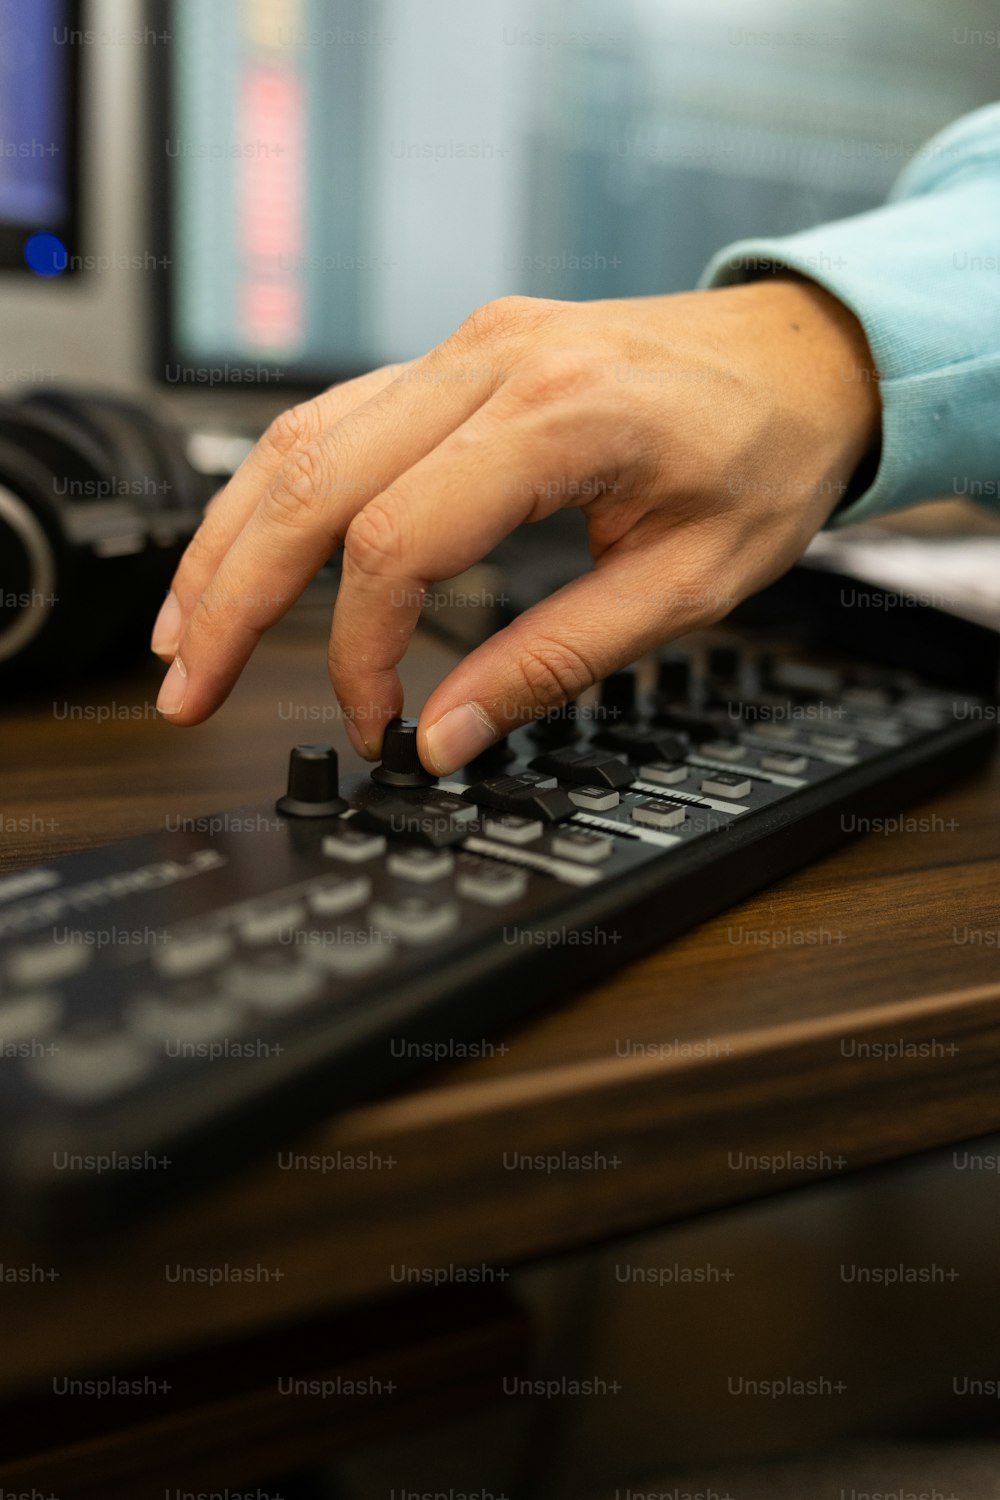 Una persona sta premendo i pulsanti su una tastiera